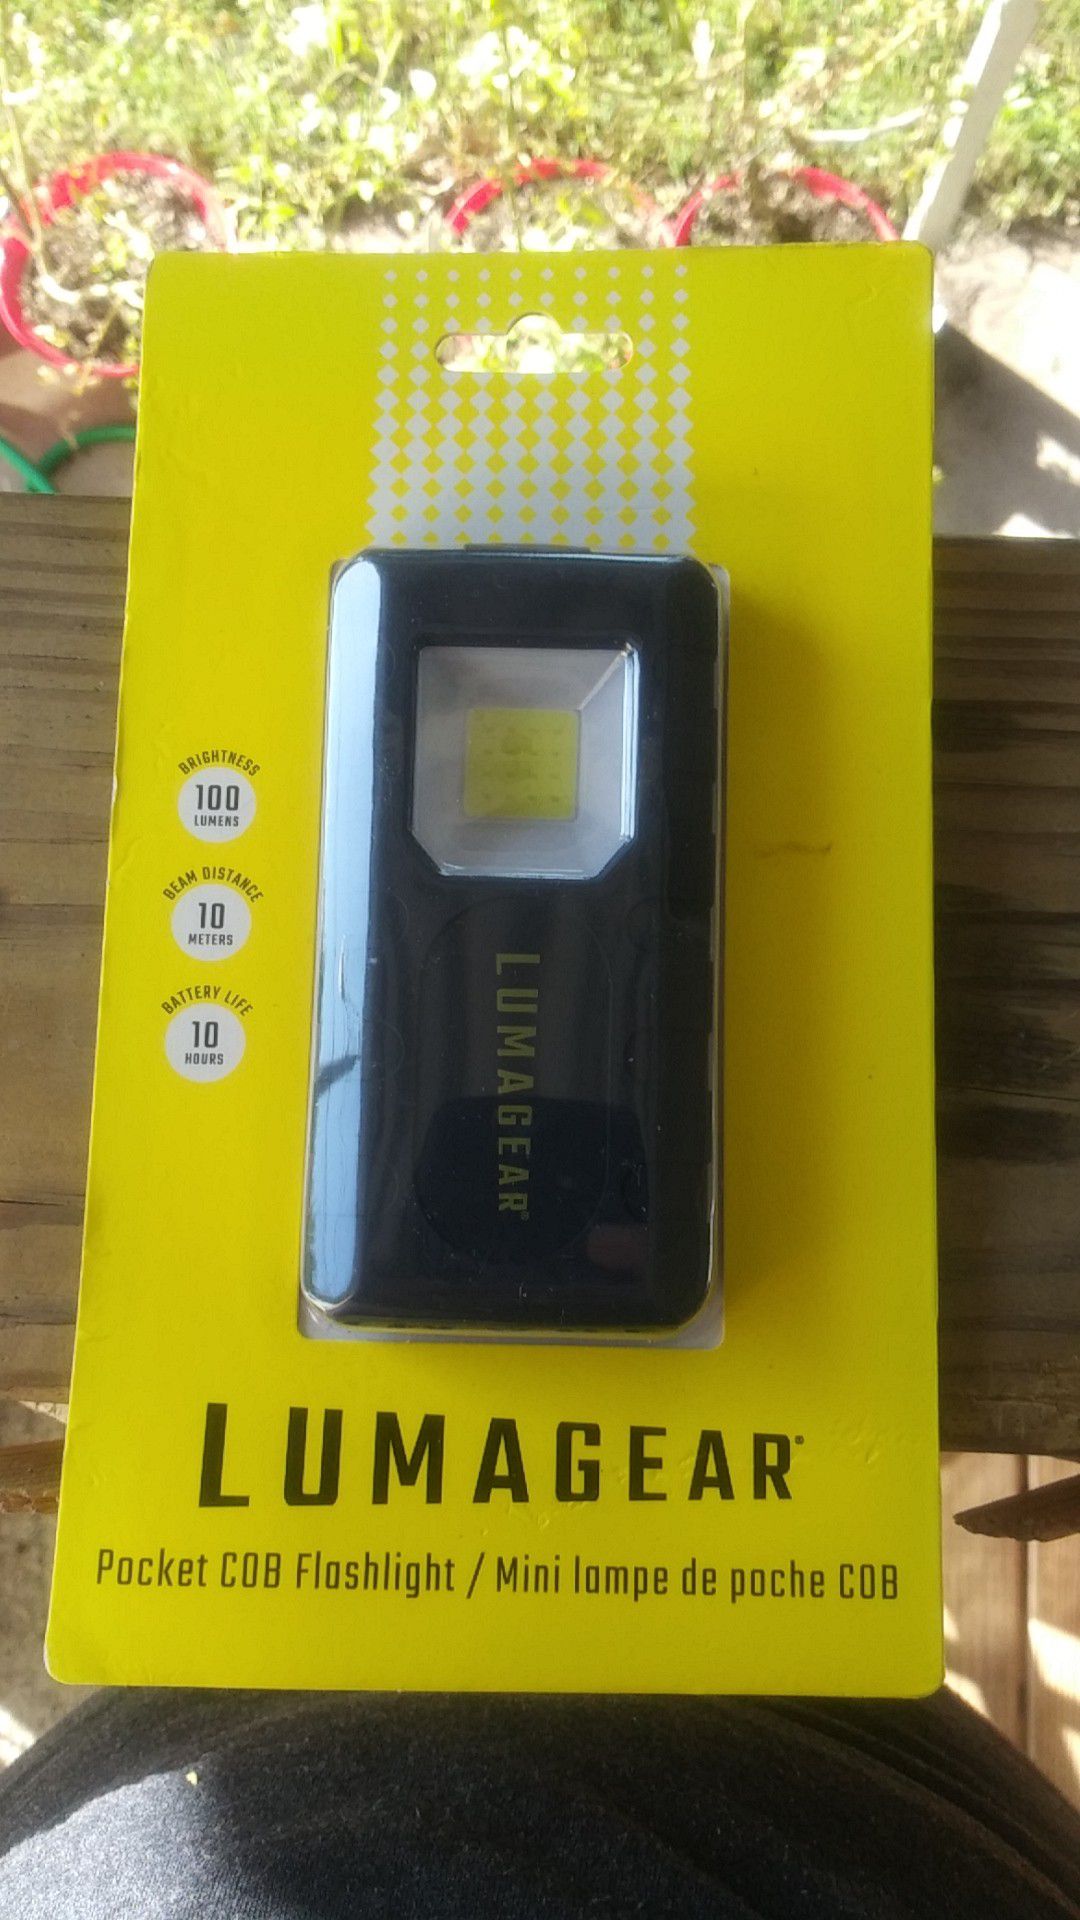 Lumagear pocket cob flashlight